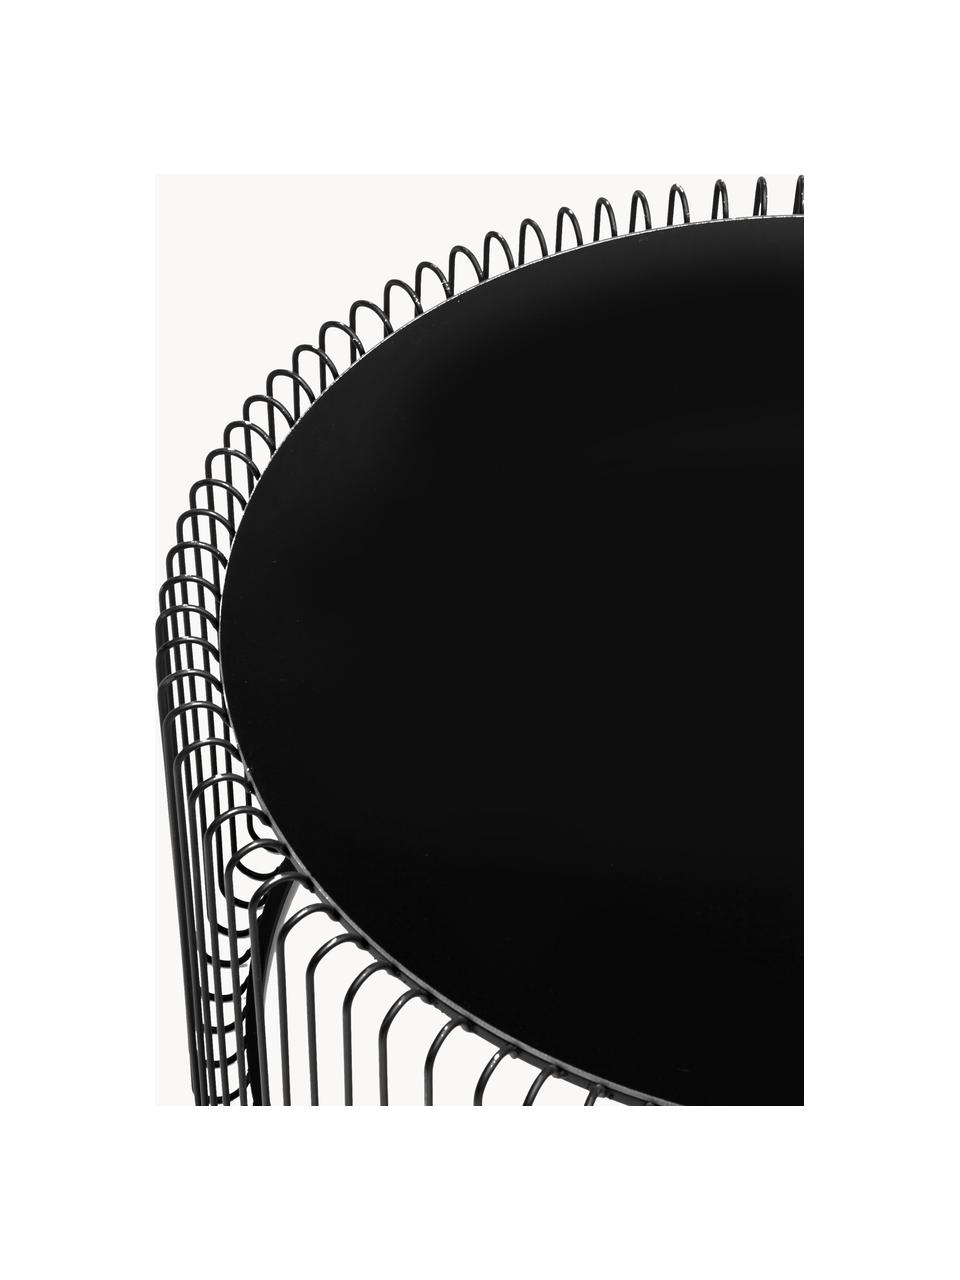 Couchtische Wire mit Glasplatte, 2er-Set, Gestell: Metall, pulverbeschichtet, Tischplatte: Sicherheitsglas, foliert, Schwarz, Spiegelglas schwarz getönt, Set mit verschiedenen Grössen